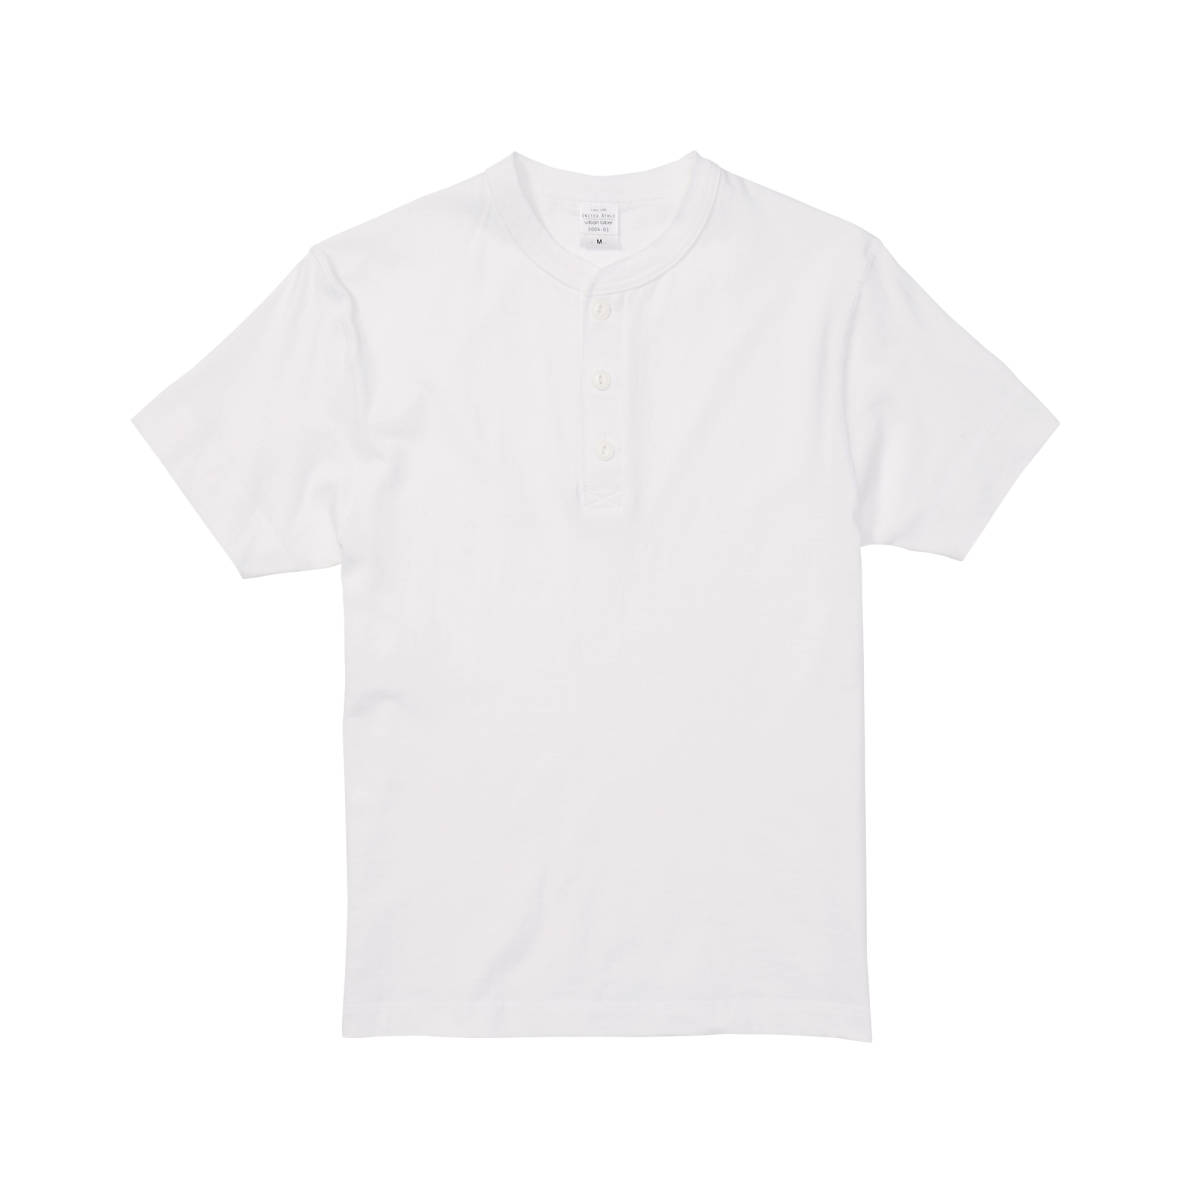 5004-01 5.6オンス ヘンリーネック Tシャツ UnitedAthle ユナイテッドアスレ ホワイト S 新品 送料無料の画像1